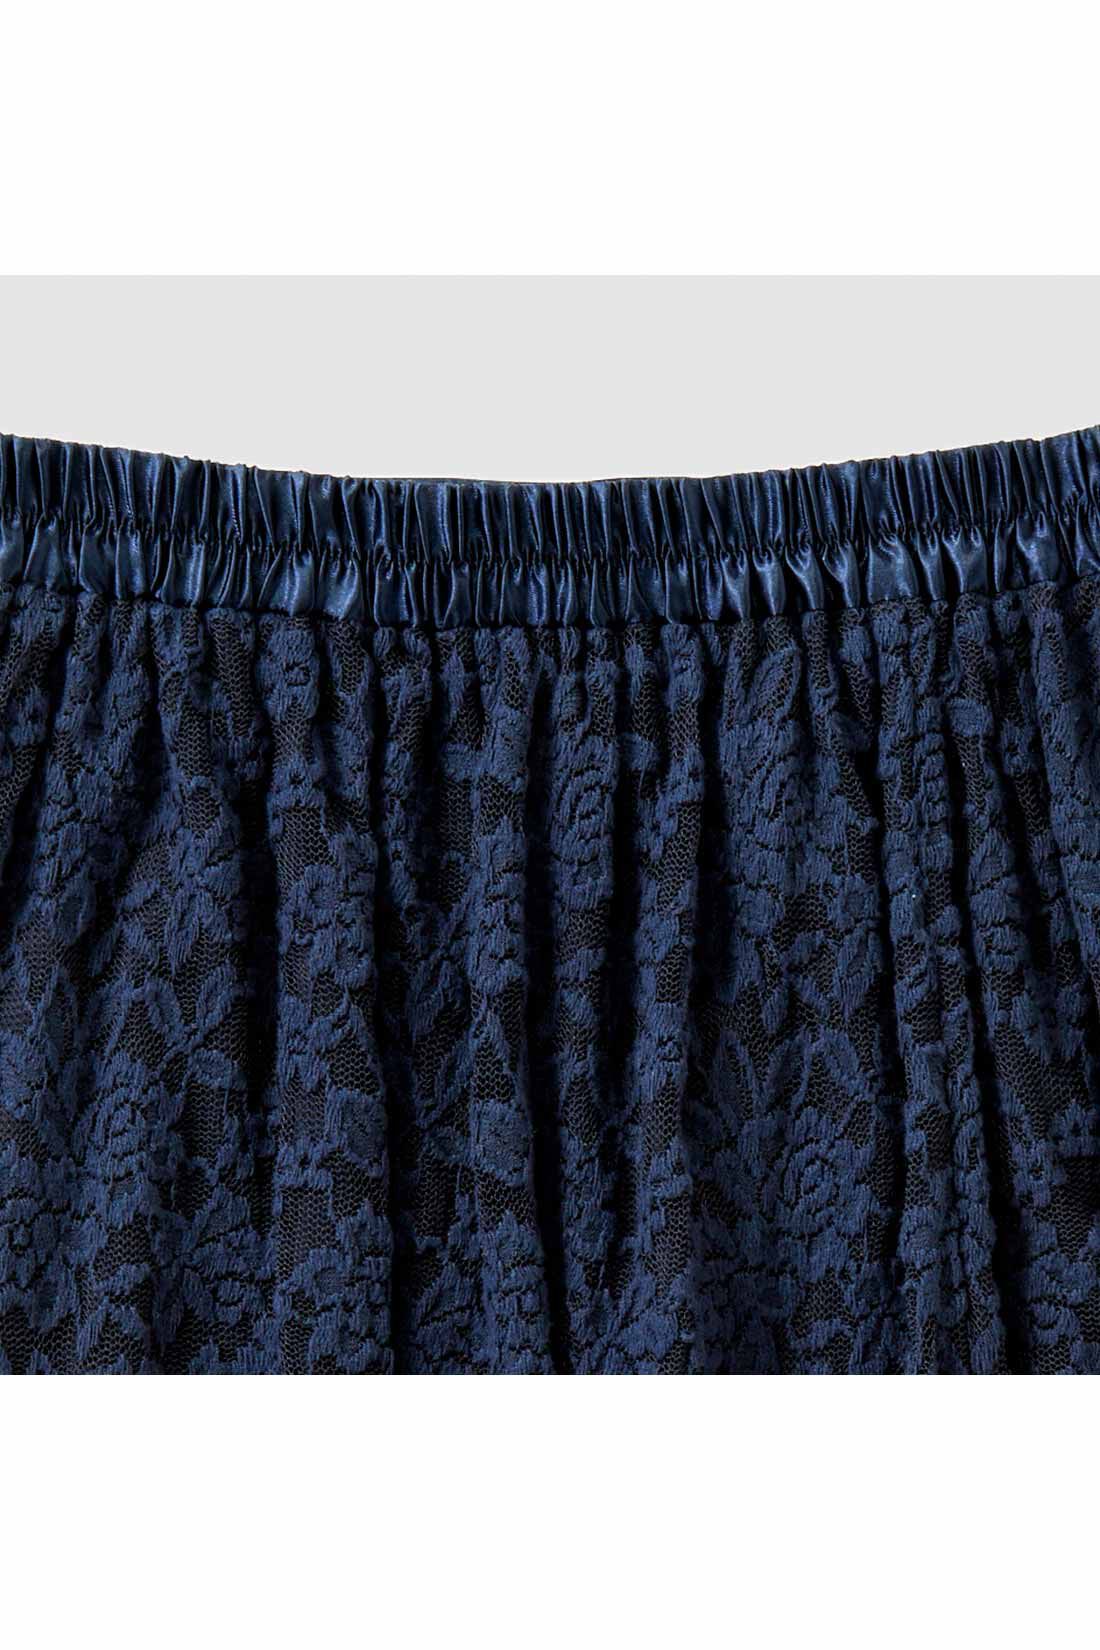 IEDIT[イディット]　帯電防止インナーがうれしい 起毛レーススカート〈ブラック〉|ウエストわきから後ろゴム仕様でらくちん。